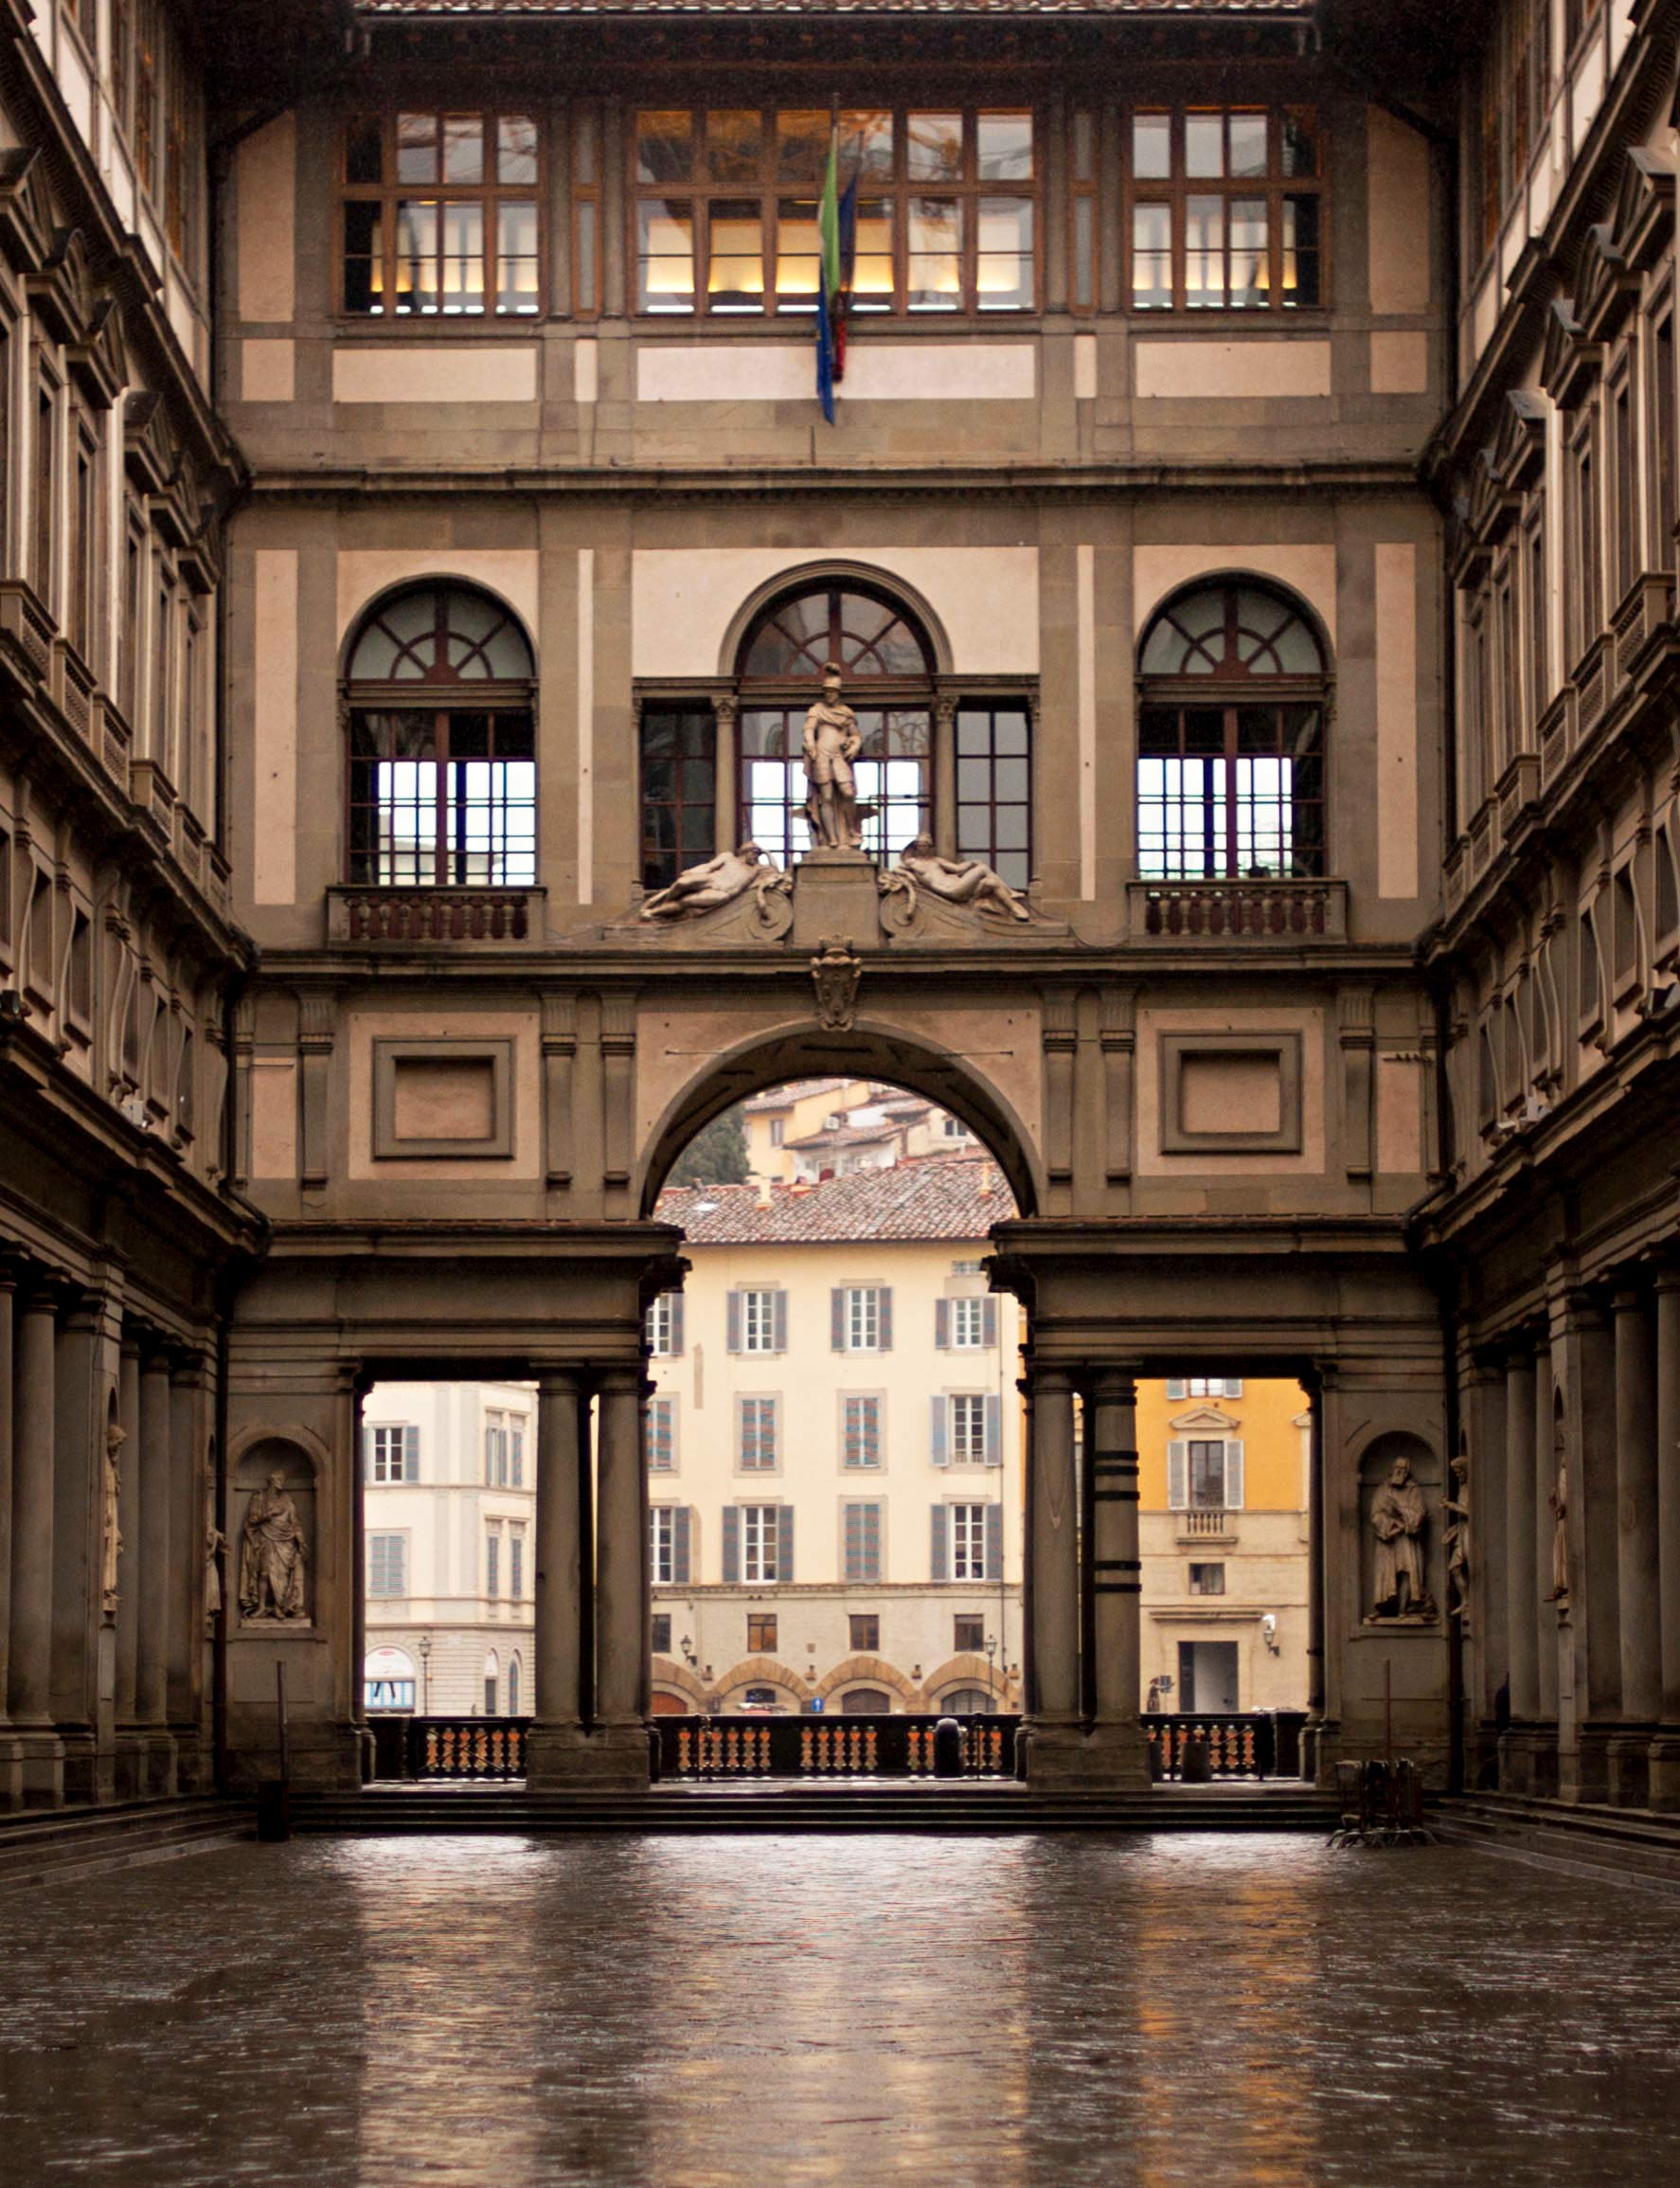 Galleria degli Uffizi – Florence, Italy